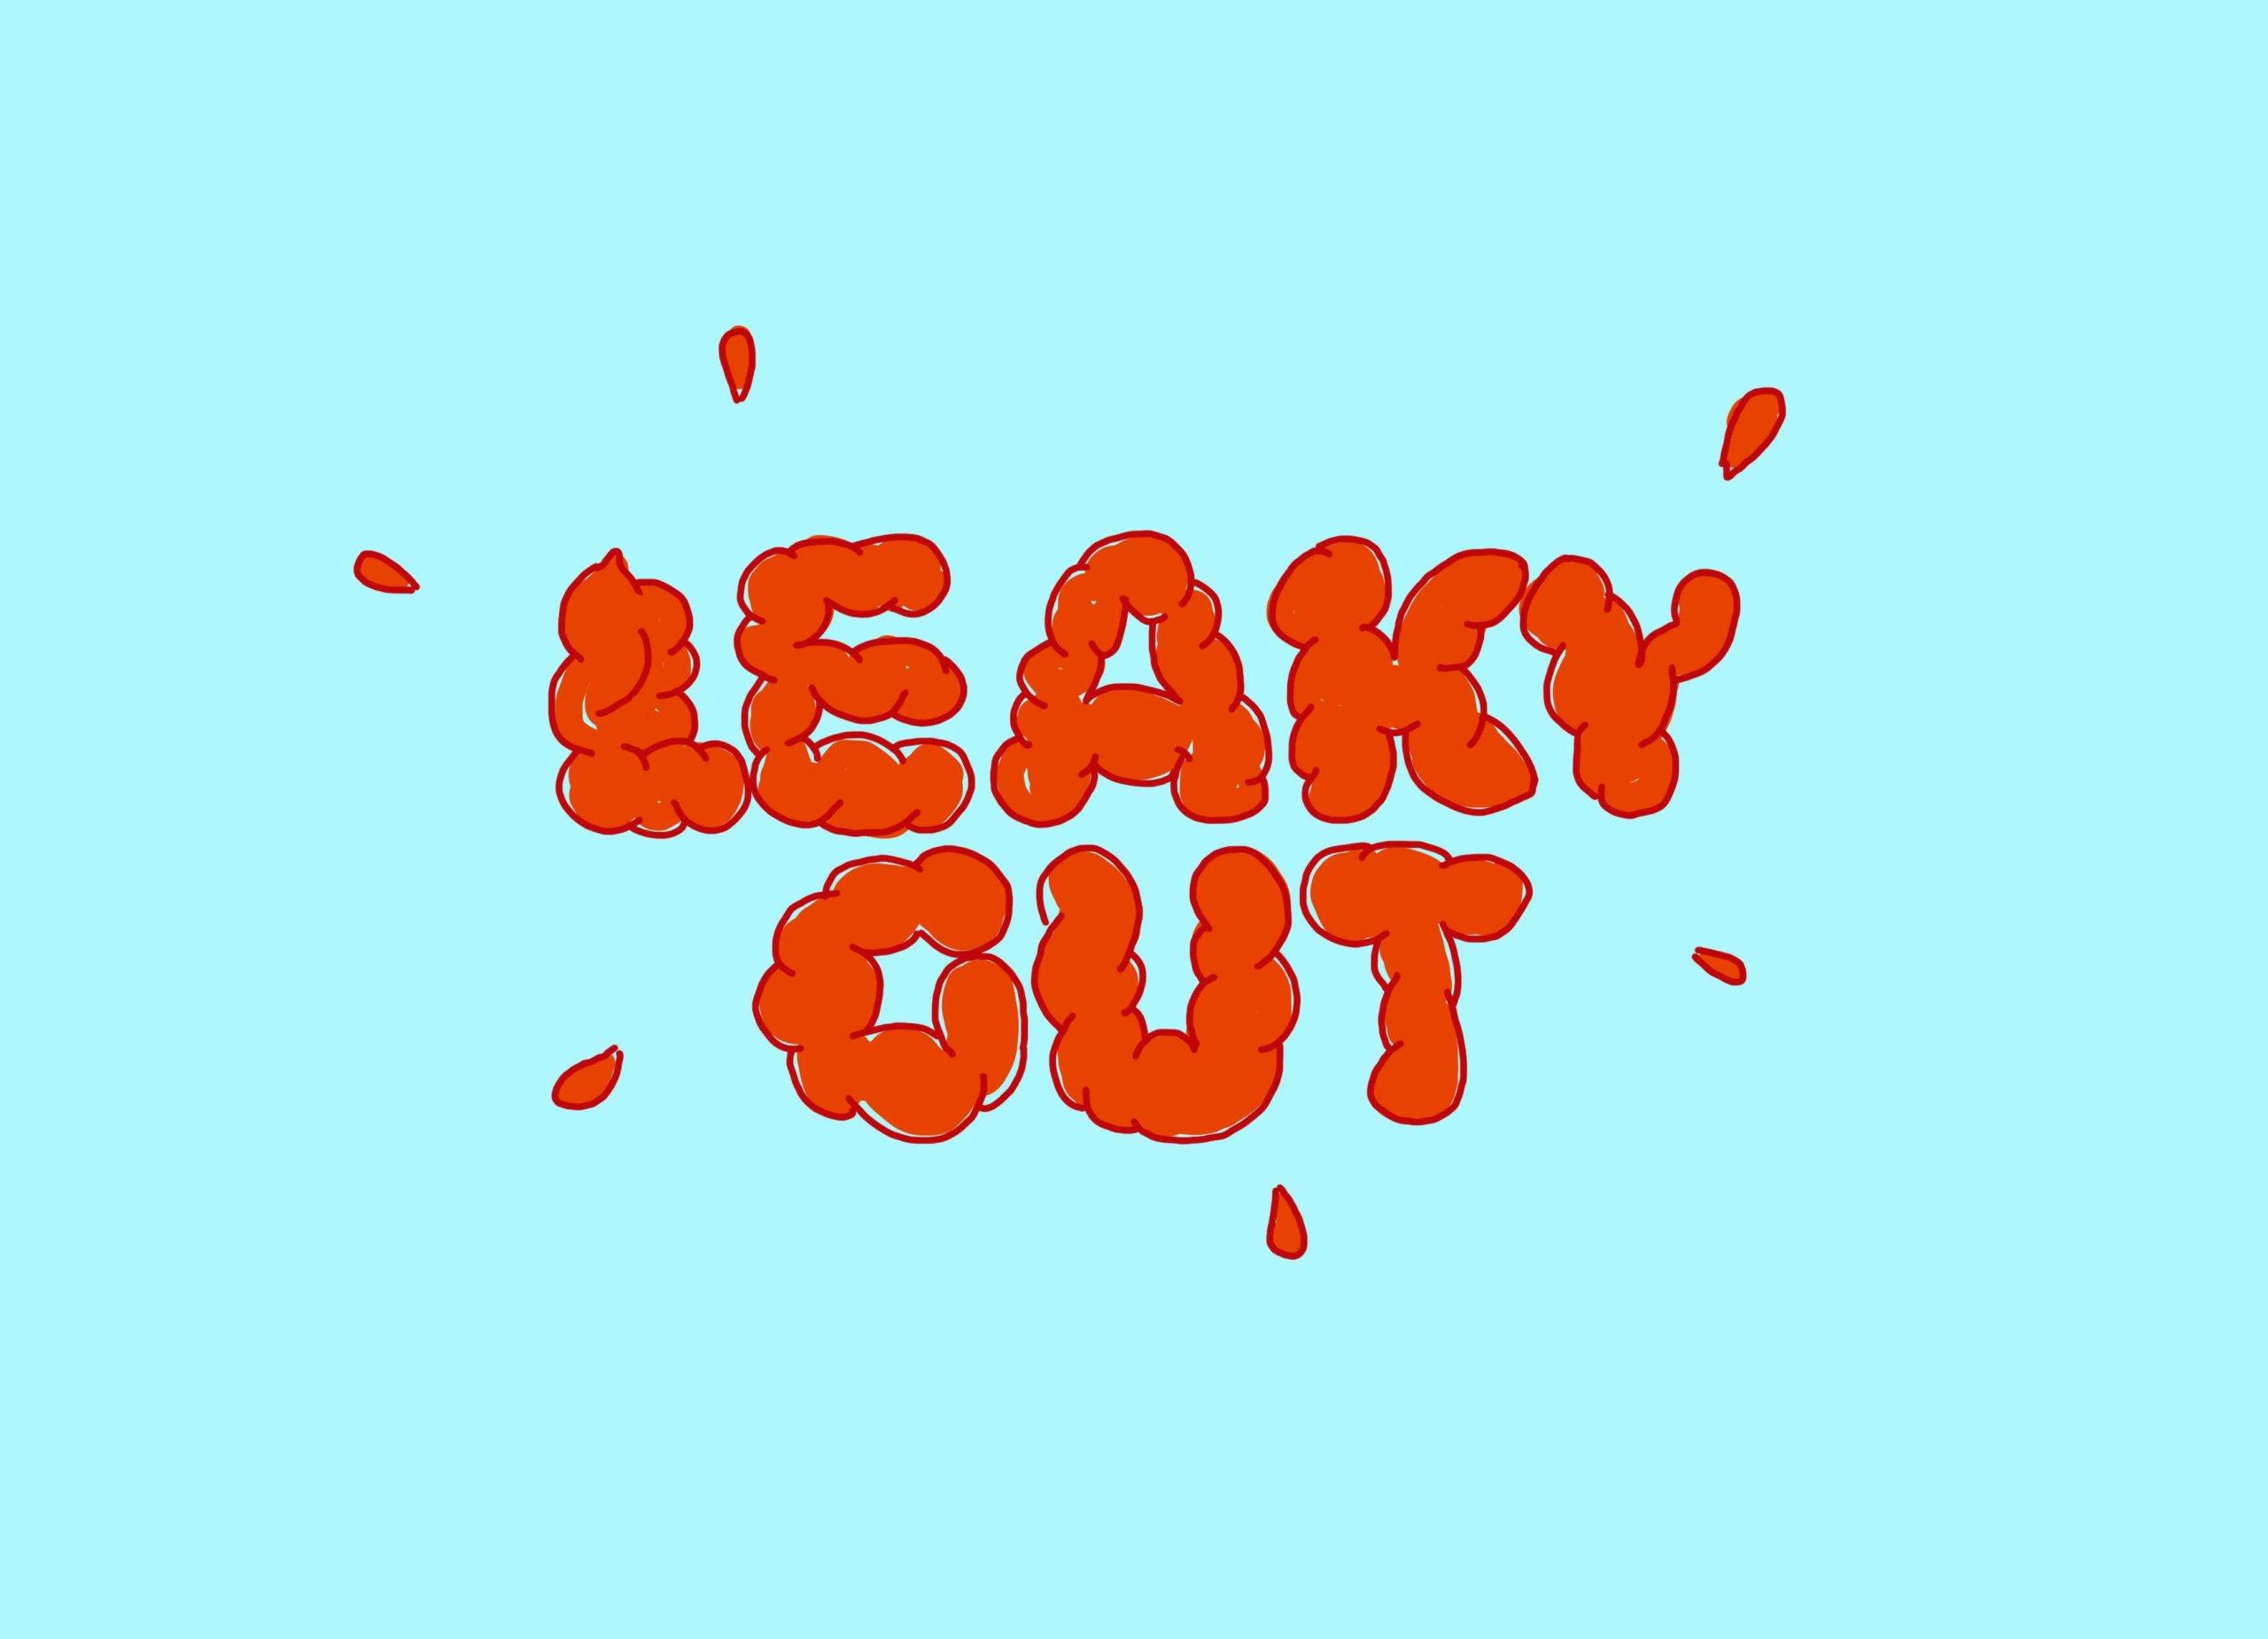 Eine Illustration der Worte "Leaky Gut" im Stil von Eingeweiden.